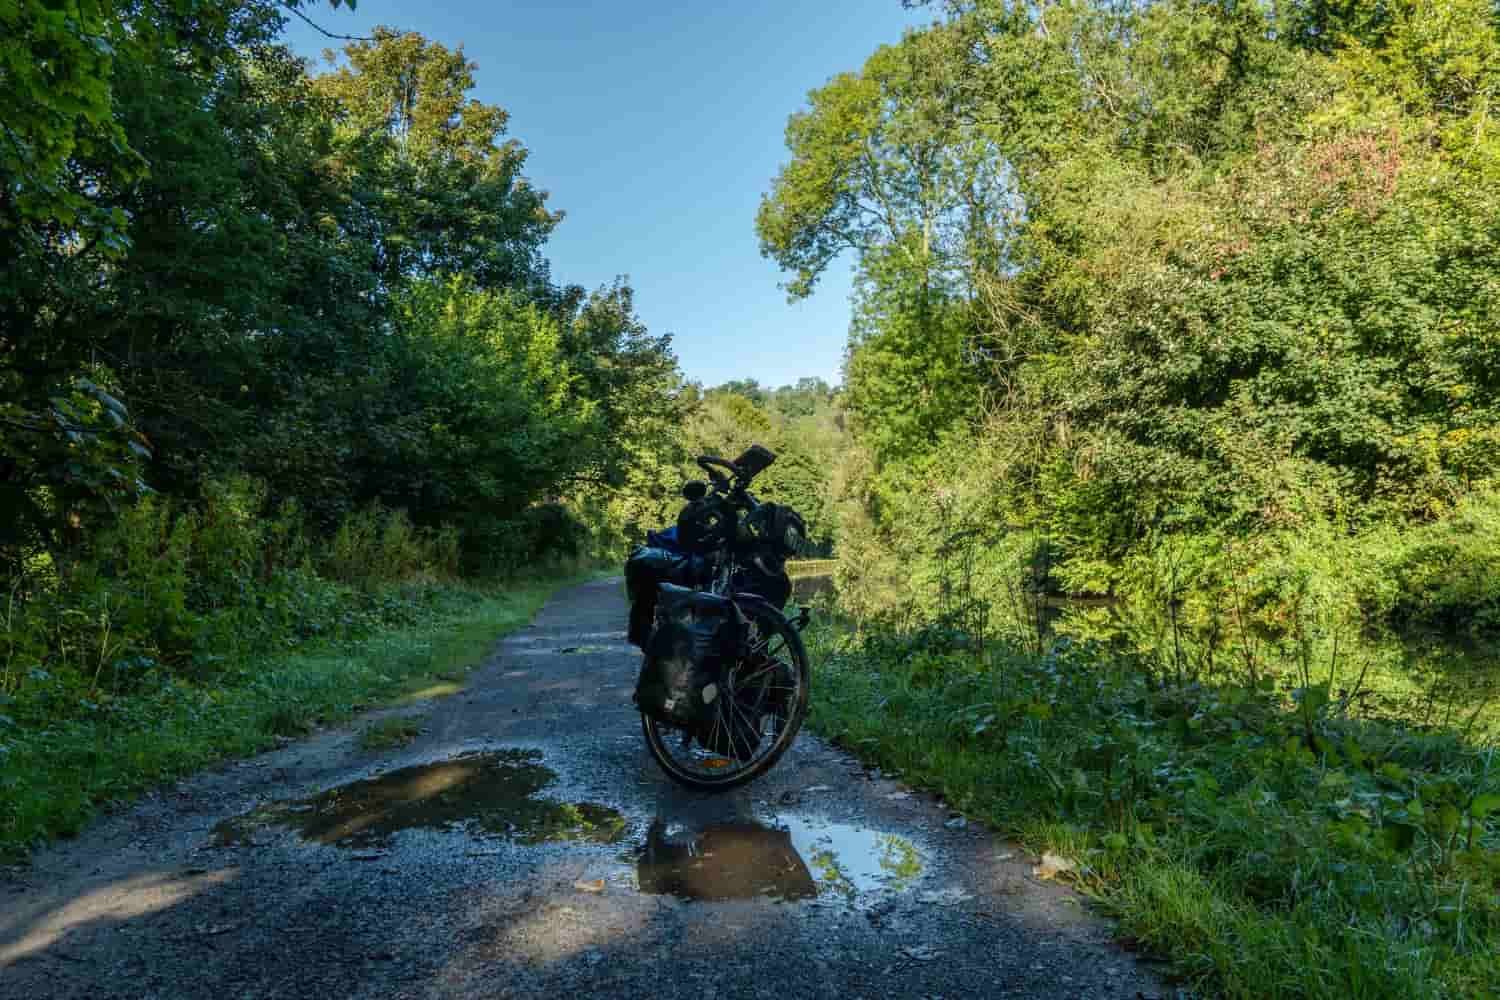 Conducción ecológica de moto en un camino rodeado de naturaleza